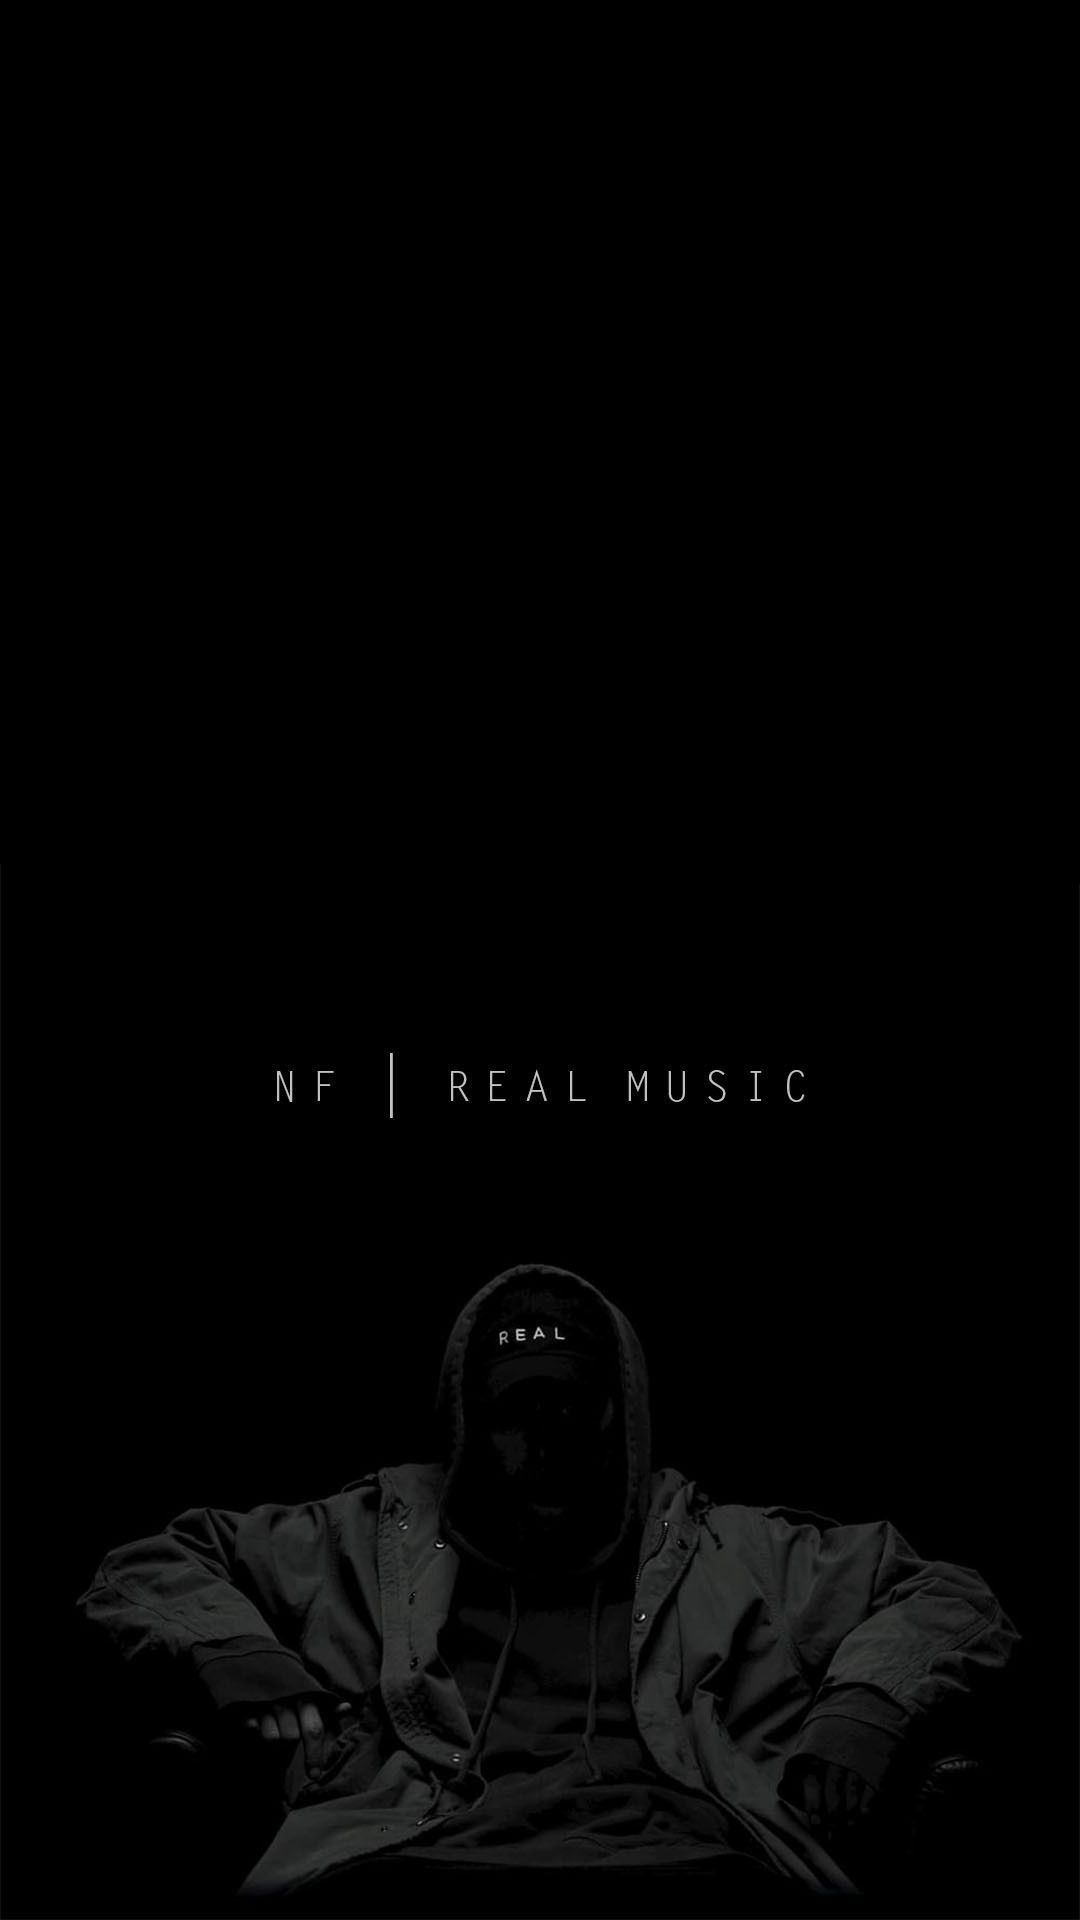 NF. Real Music. Nf real music, Nf quotes, Nf real